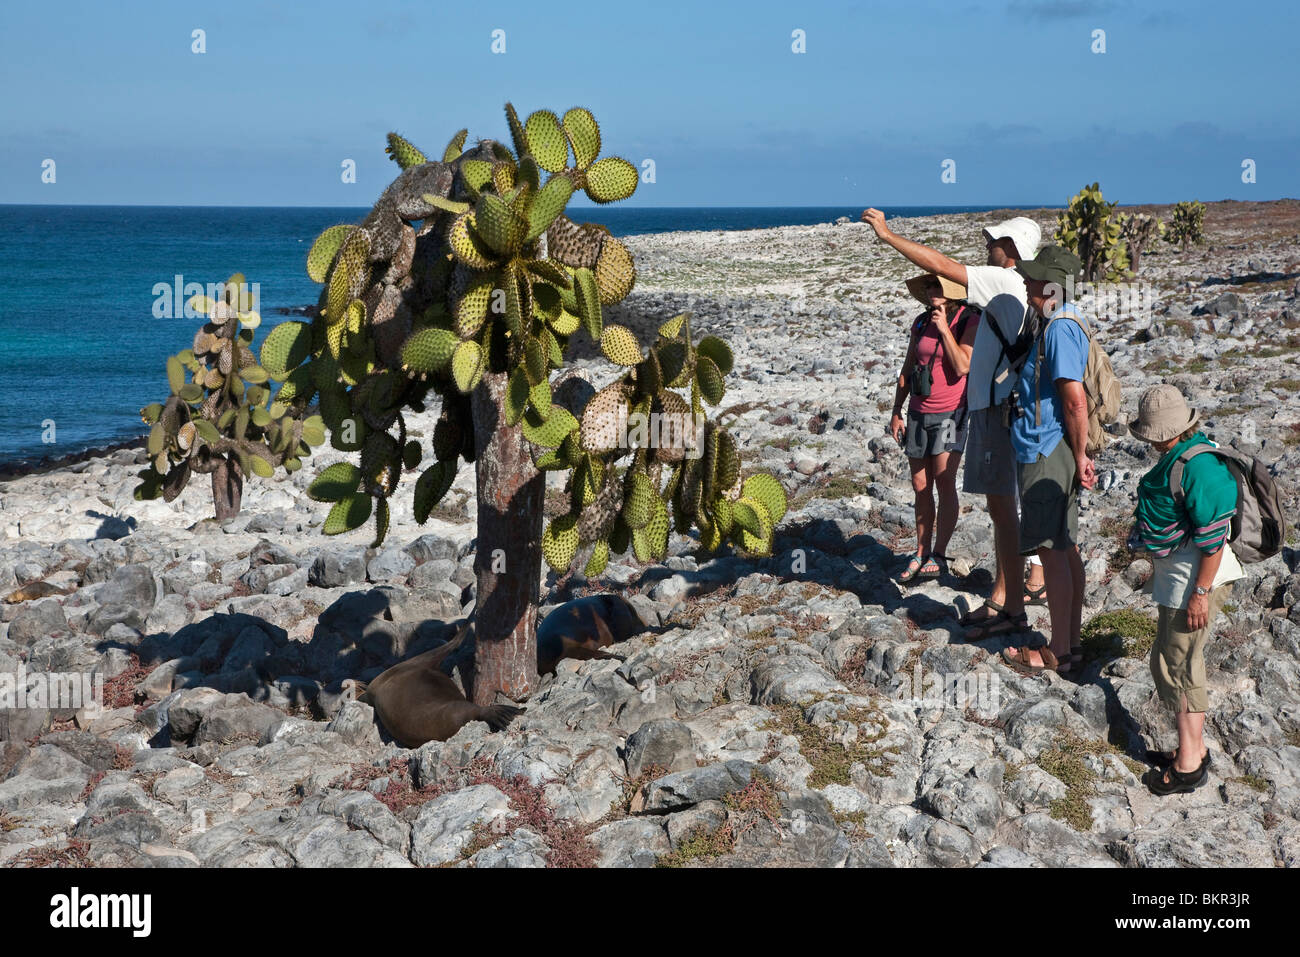 Îles Galápagos, l'île South Plaza, Galapagos les lions de mer se reposant sous un énorme arbre cactus. Banque D'Images